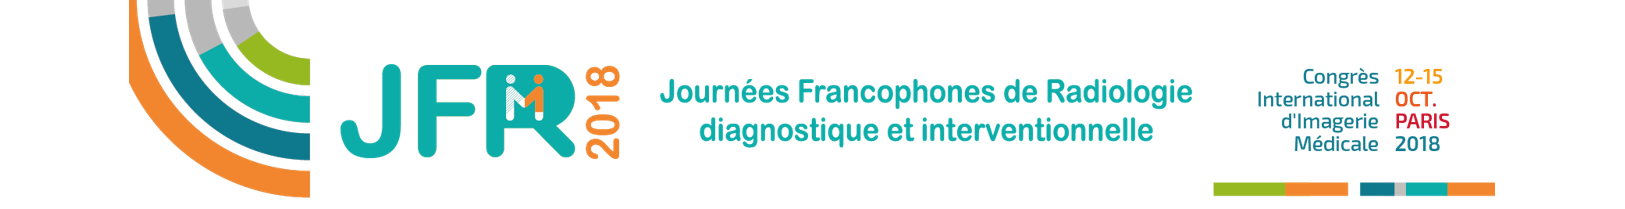 2018 - Journées Francophones de Radiologie diagnostique et interventionnelle